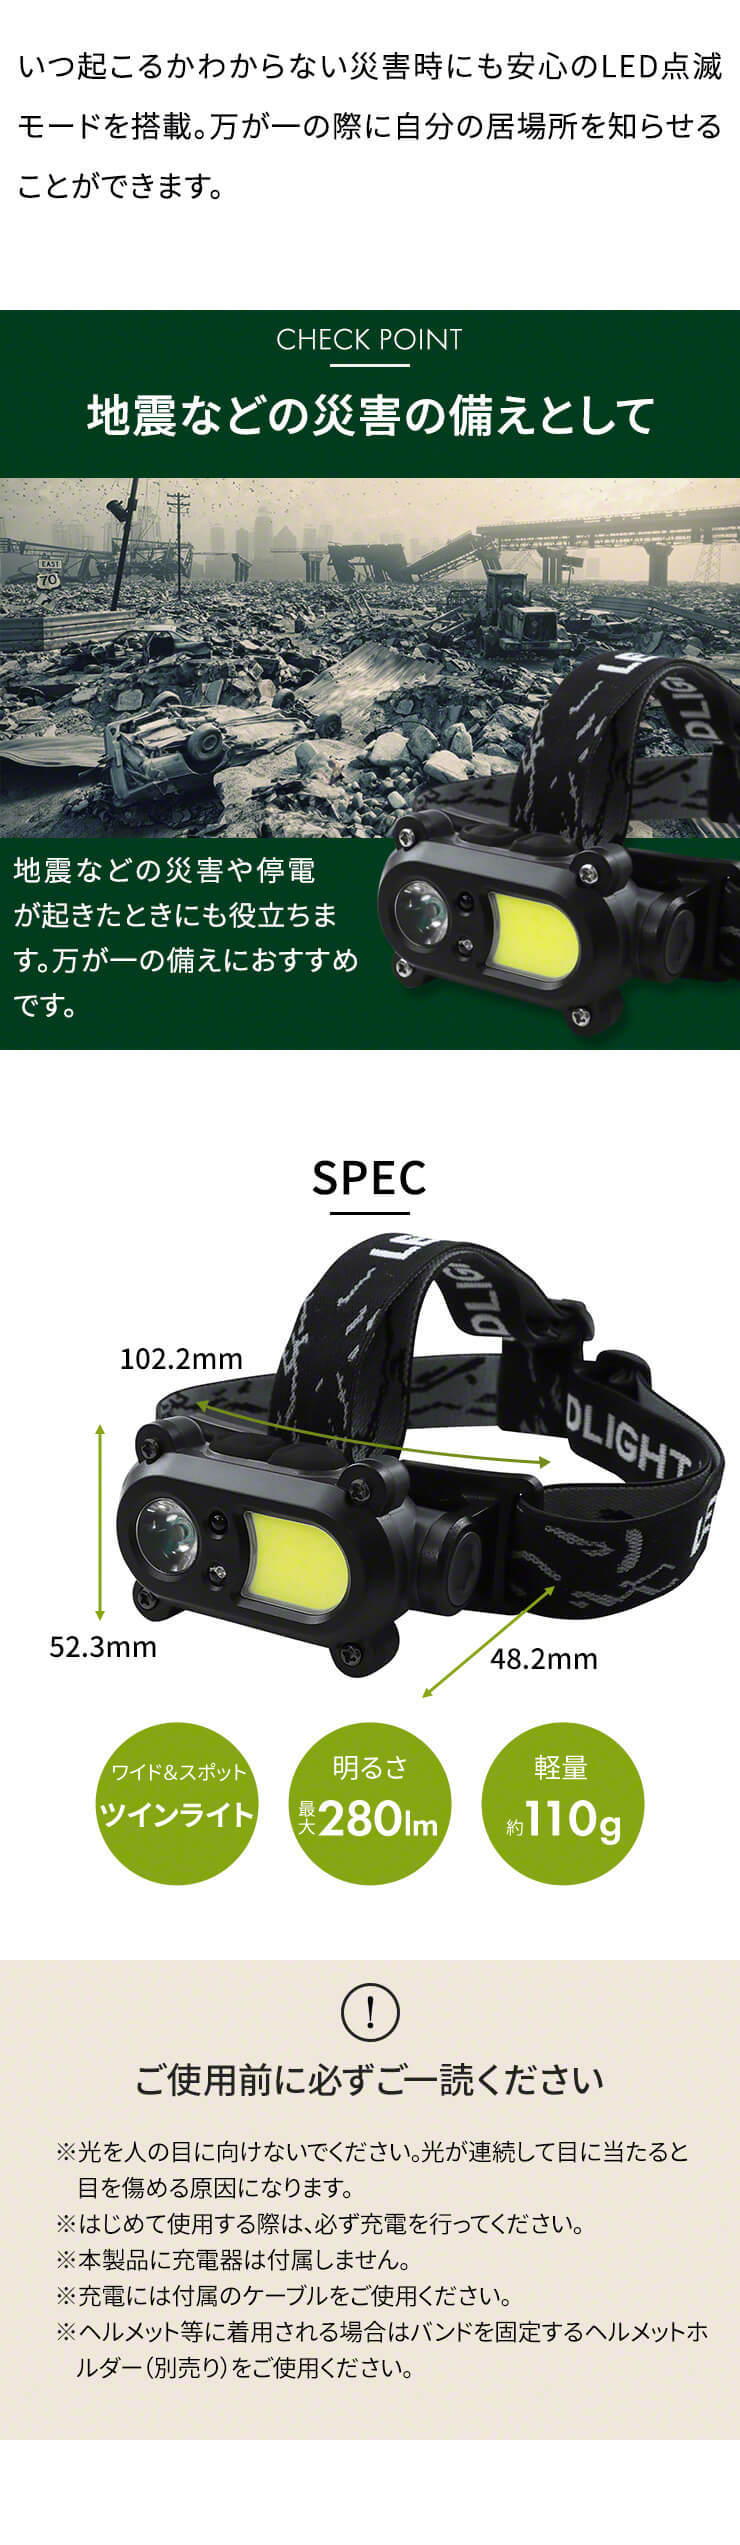 ツイン ヘッドライト スポット ワイド 充電式 軽量 LED 明るい 280lm センサー 搭載 角度調整 長時間 キャンプ 釣り 登山 ランニング 散歩 作業 防災